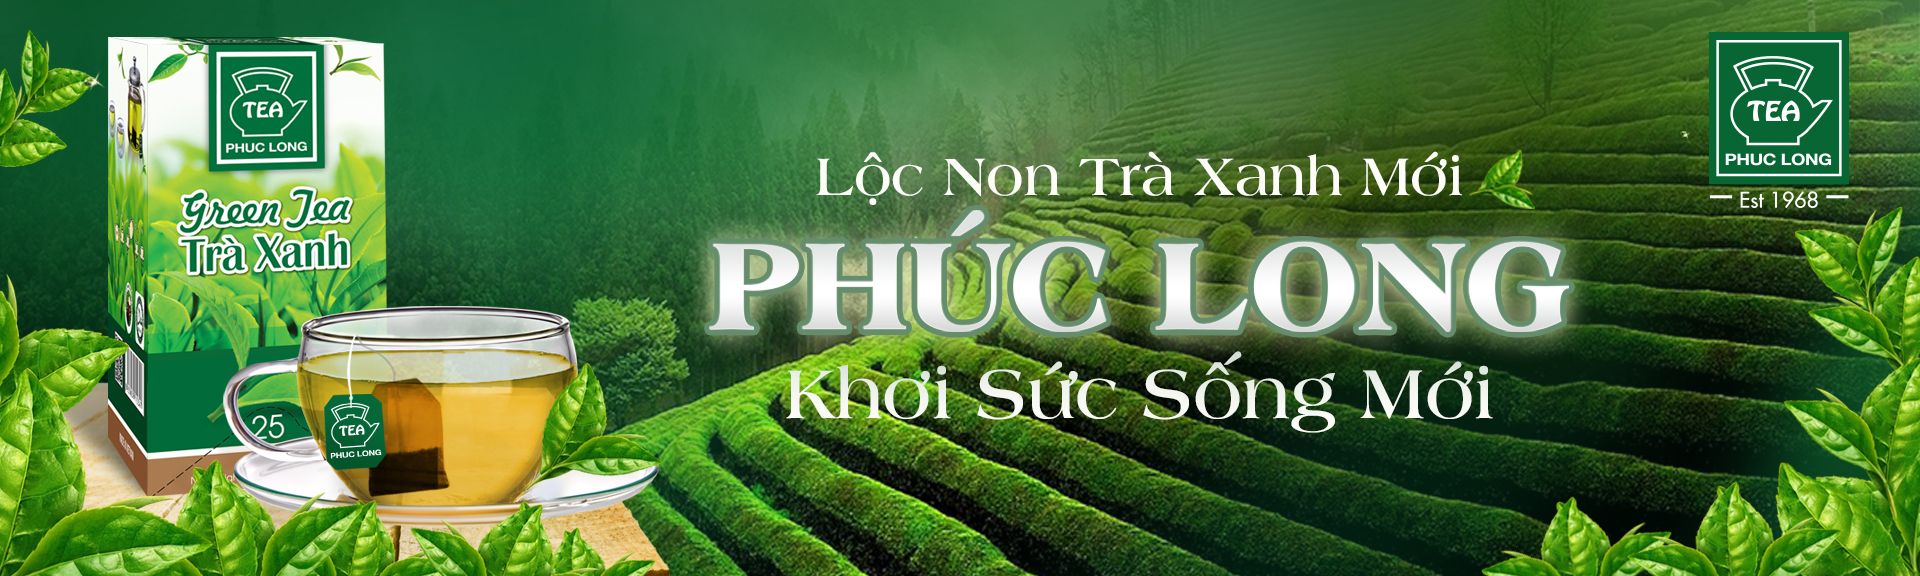 Hệ Thống Cửa Hàng Phuc Long Coffee & Tea - Phúc Long Coffee & Tea